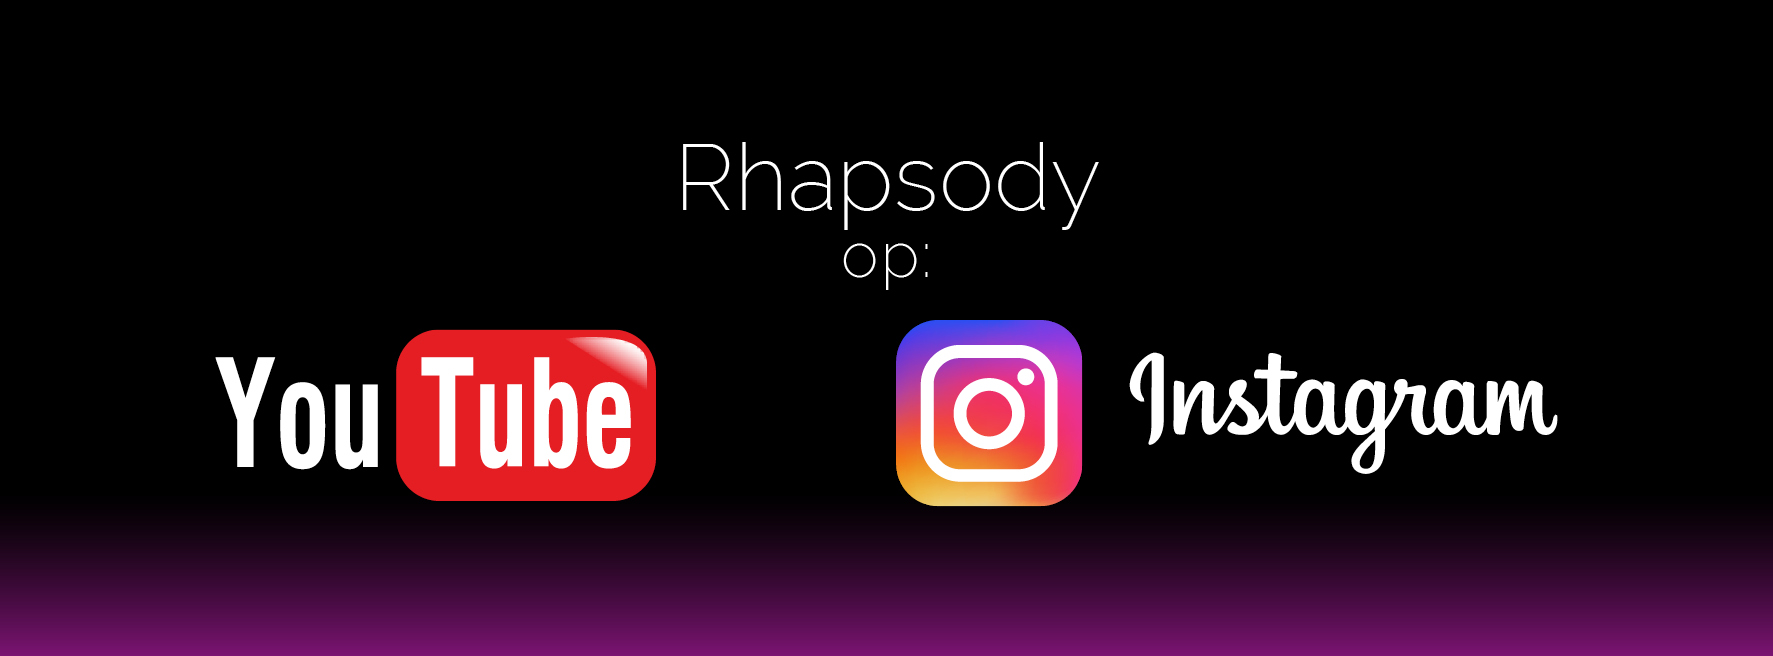 Rhapsody goes YouTube en Instagram